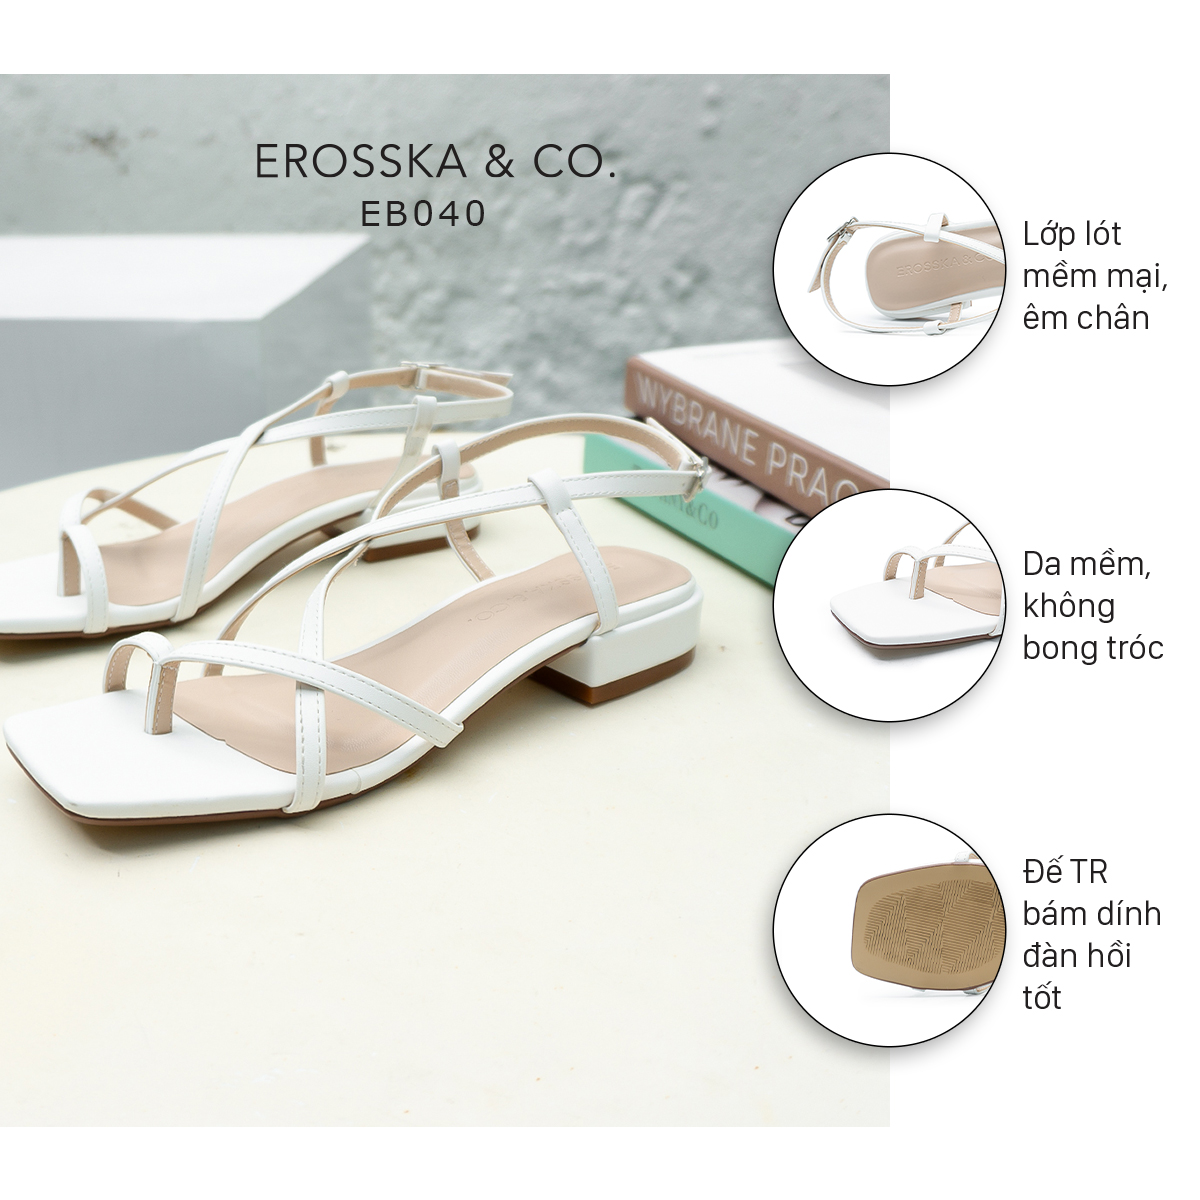 Erosska - Giày sandal cao gót quai mảnh mũi vuông cao 2,5cm EB040